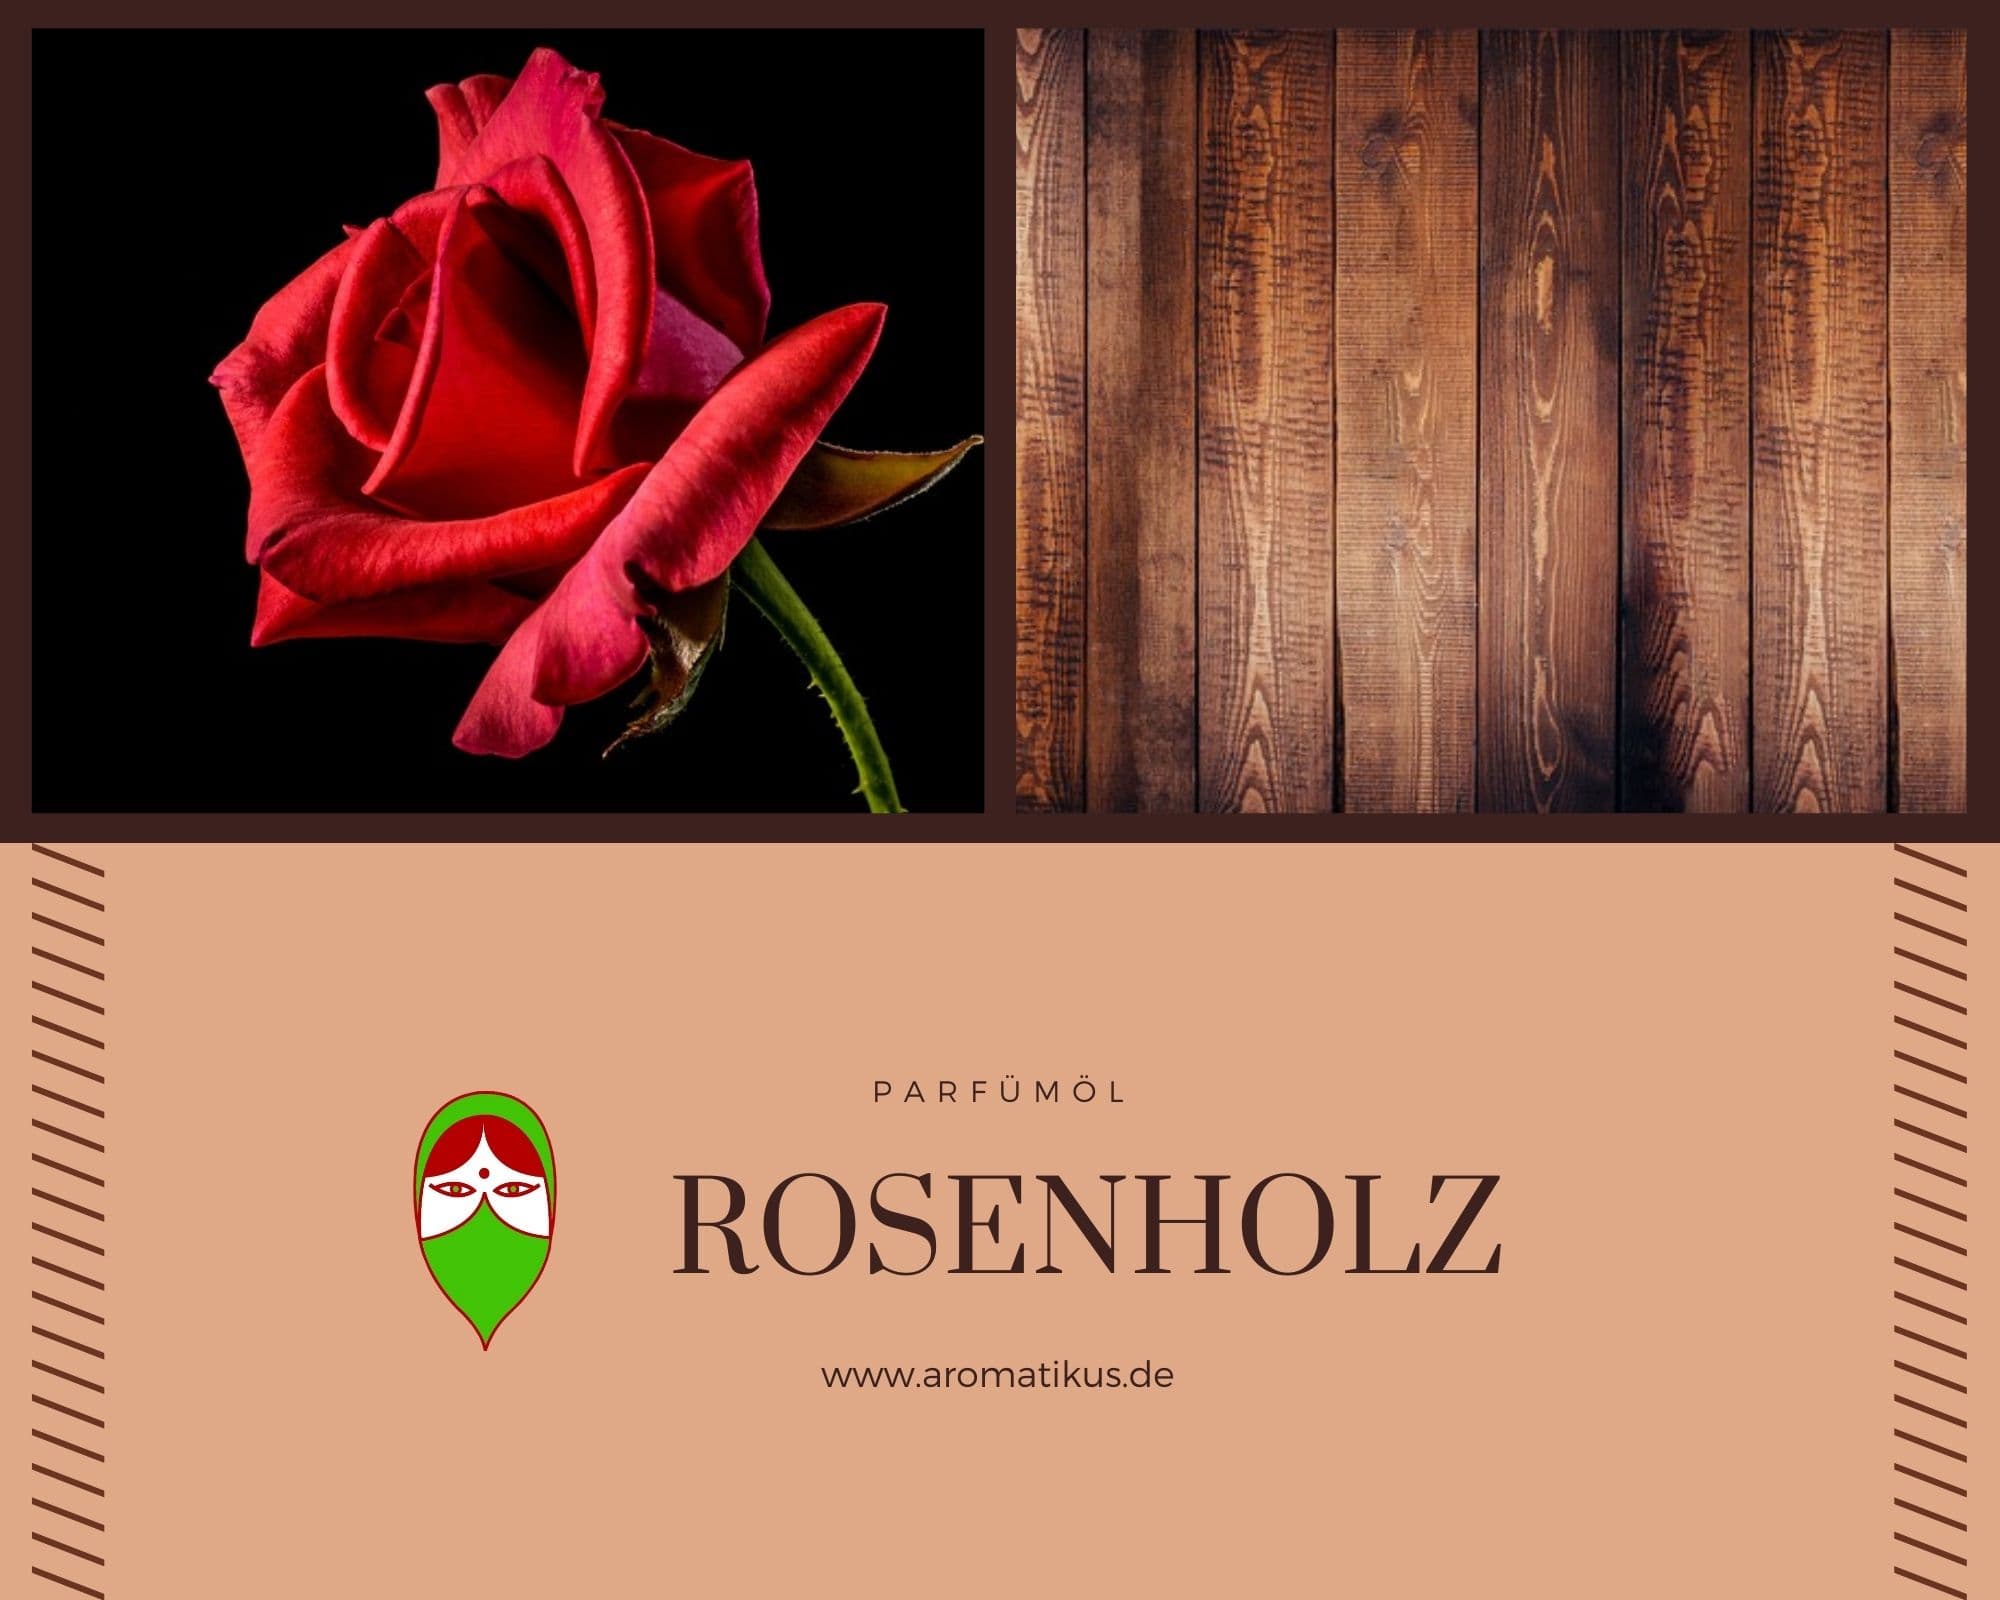 Ätherisches Duftöl Rosenholz als naturreines Öl von Aromatikus